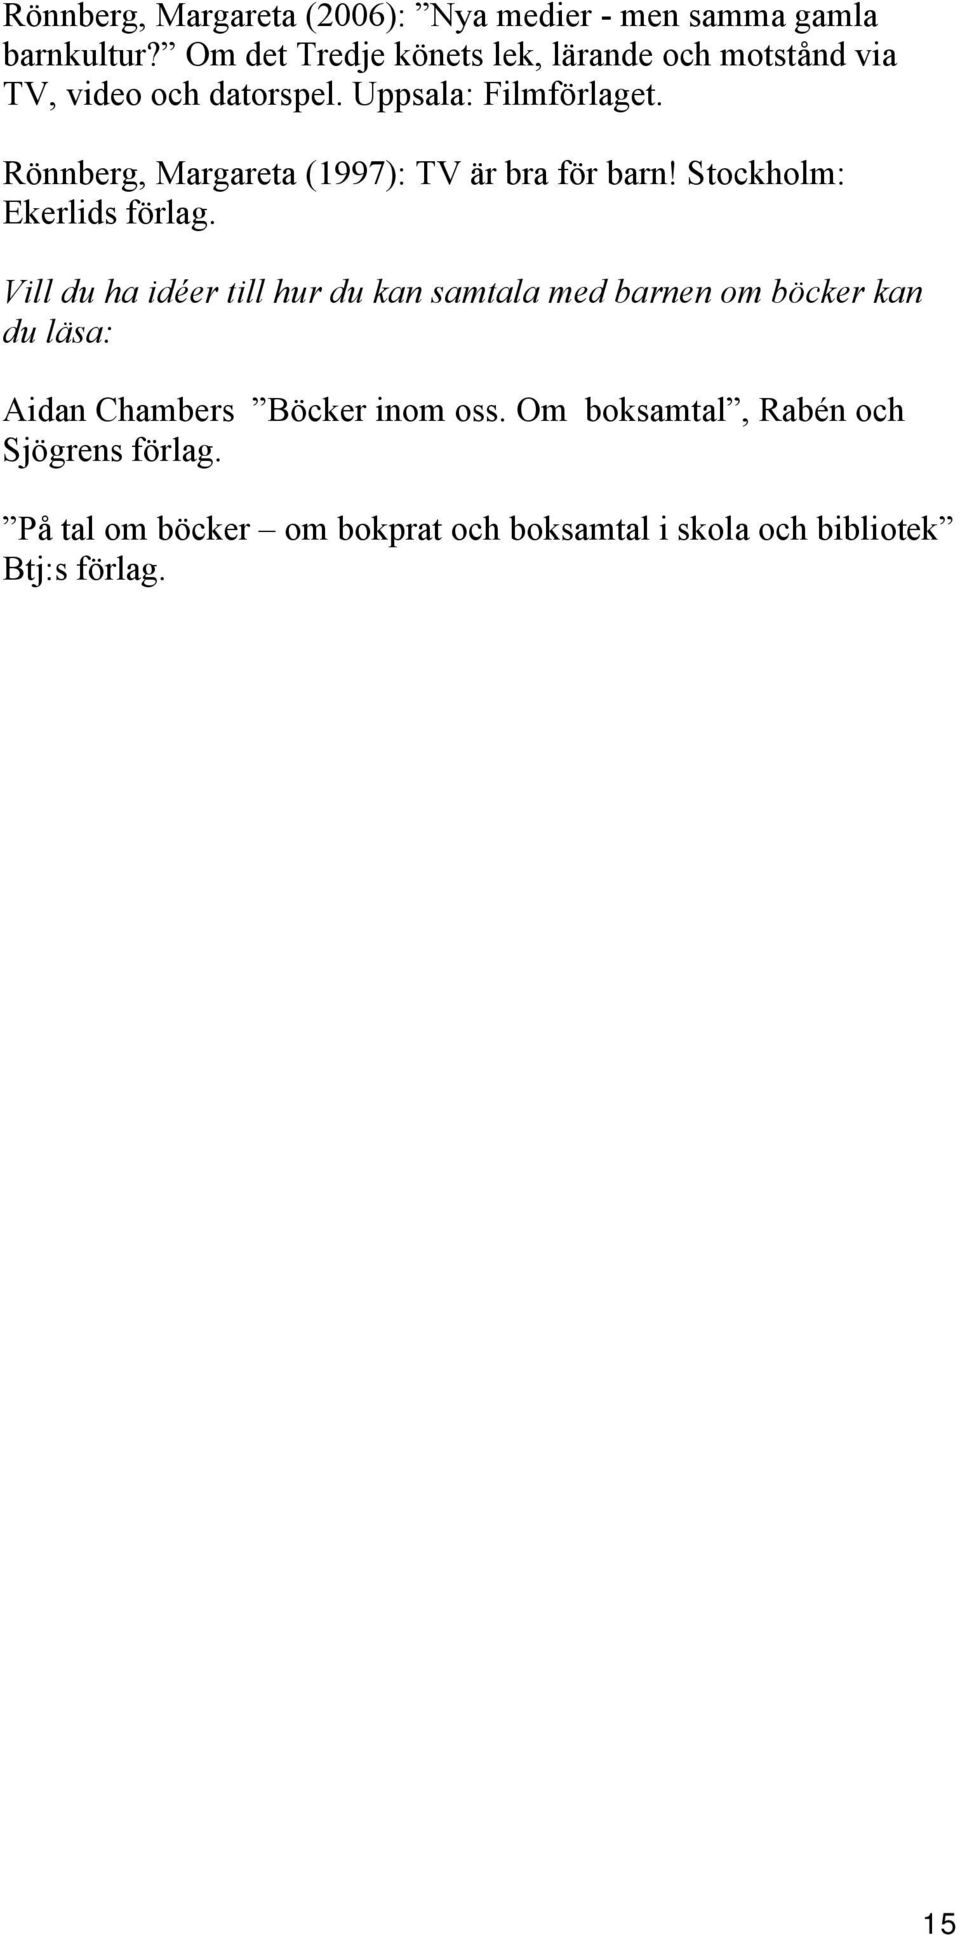 Rönnberg, Margareta (1997): TV är bra för barn! Stockholm: Ekerlids förlag.